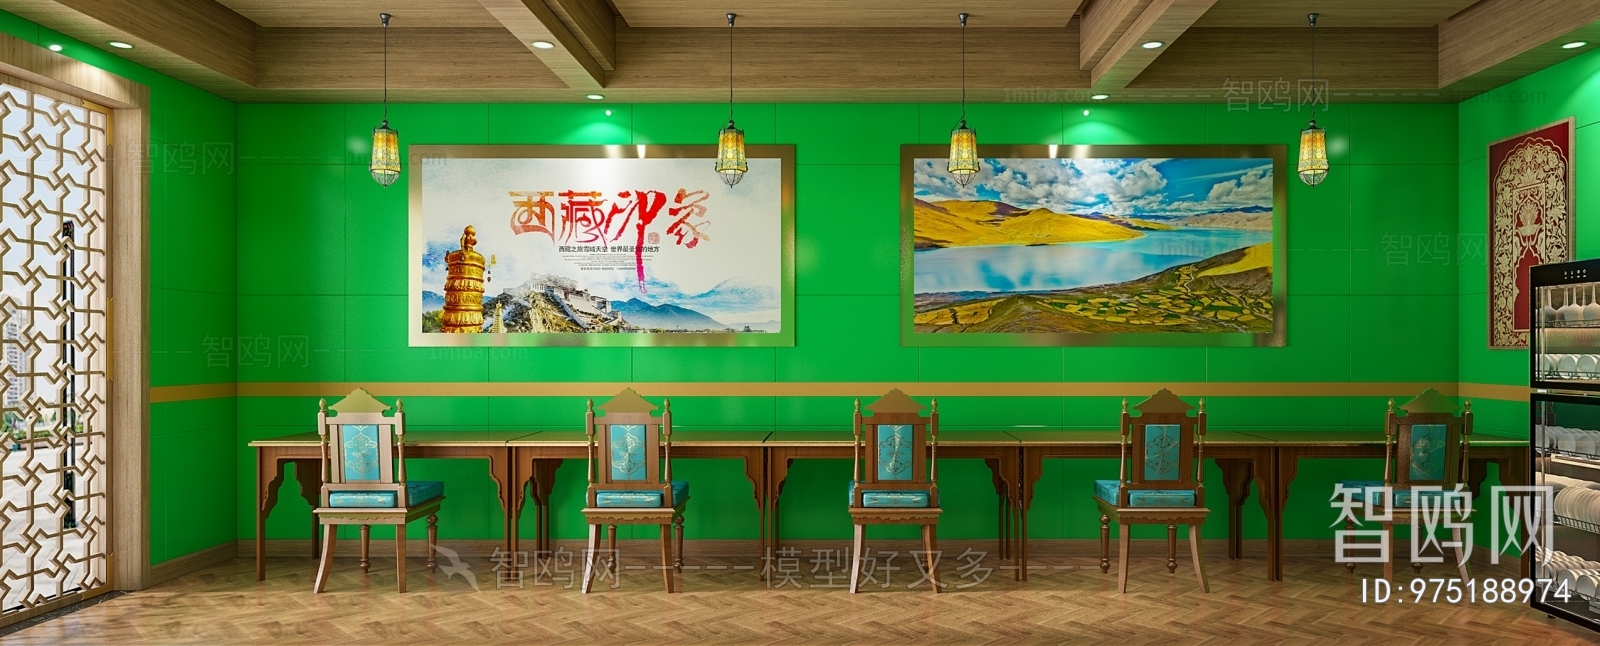 现代藏式奶茶店